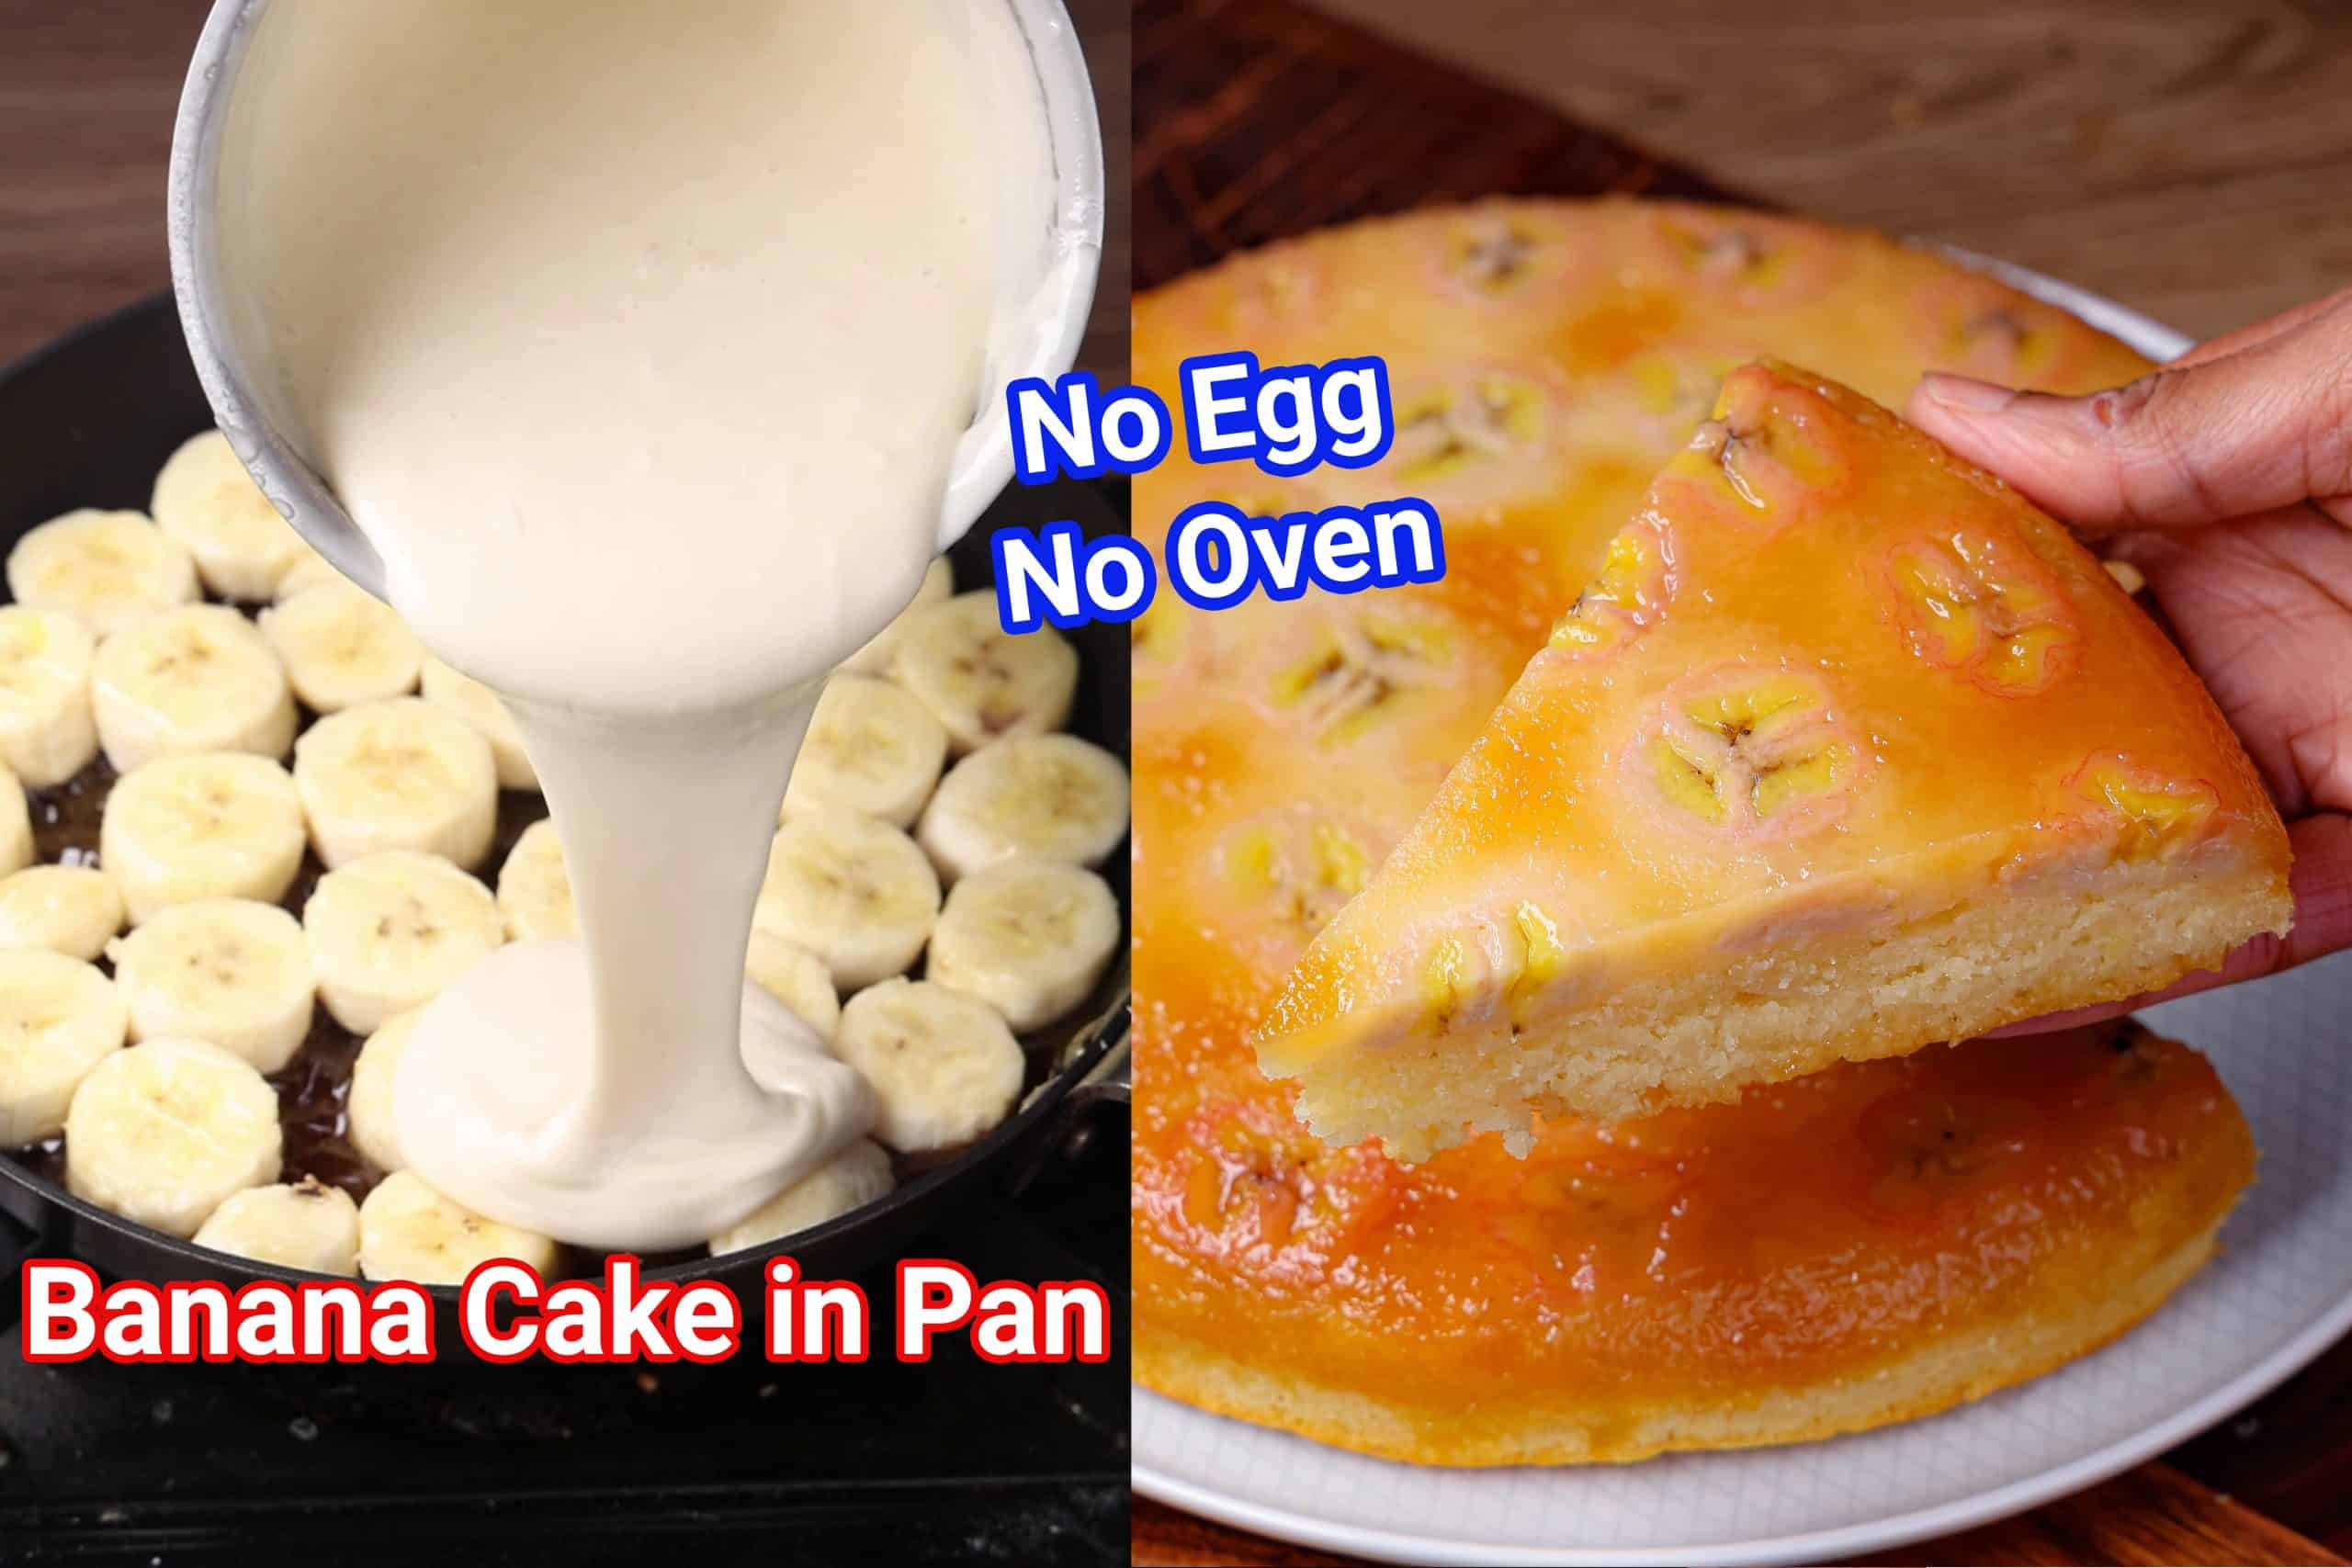 Rava Cake | Sooji Cake | Semolina Cake (Eggless) - Aromatic Essence